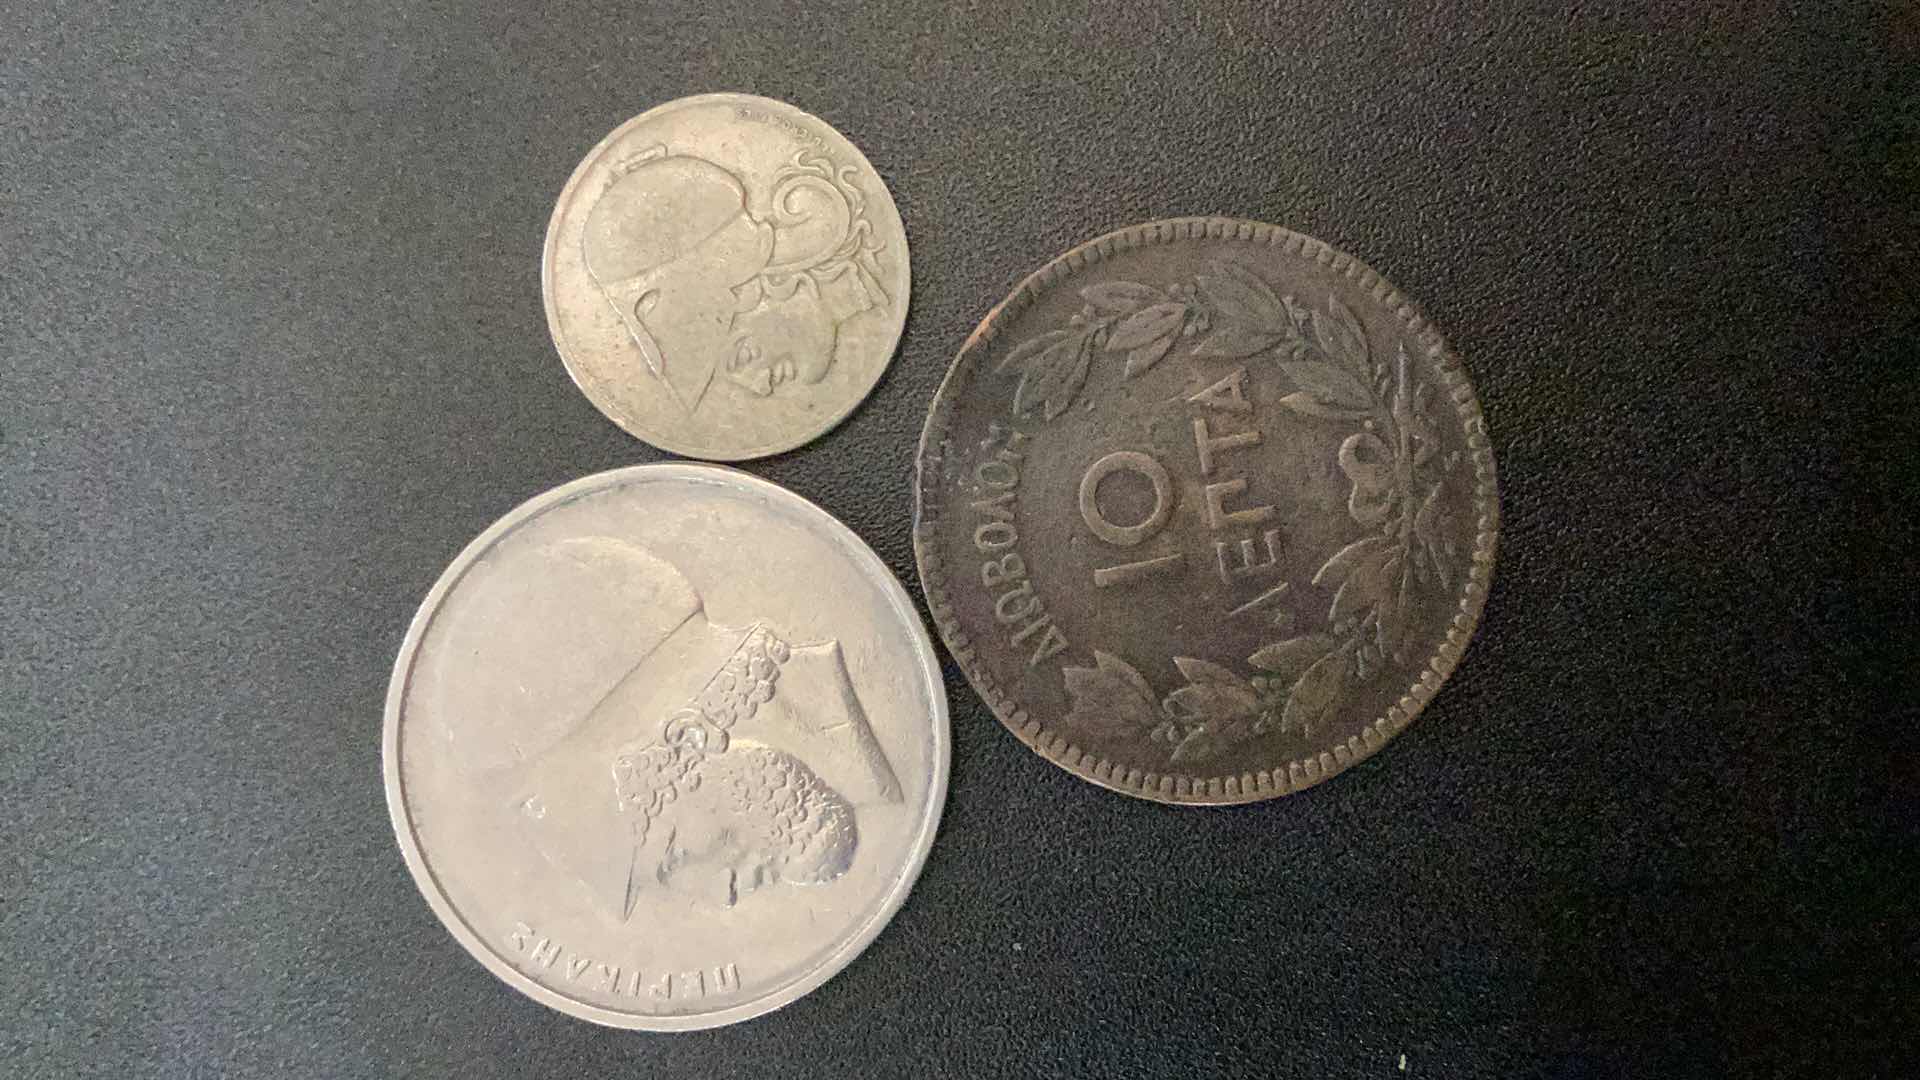 Photo 2 of 3 COLLECTIBLE COINS - GREECE 1878, 1926, 1984